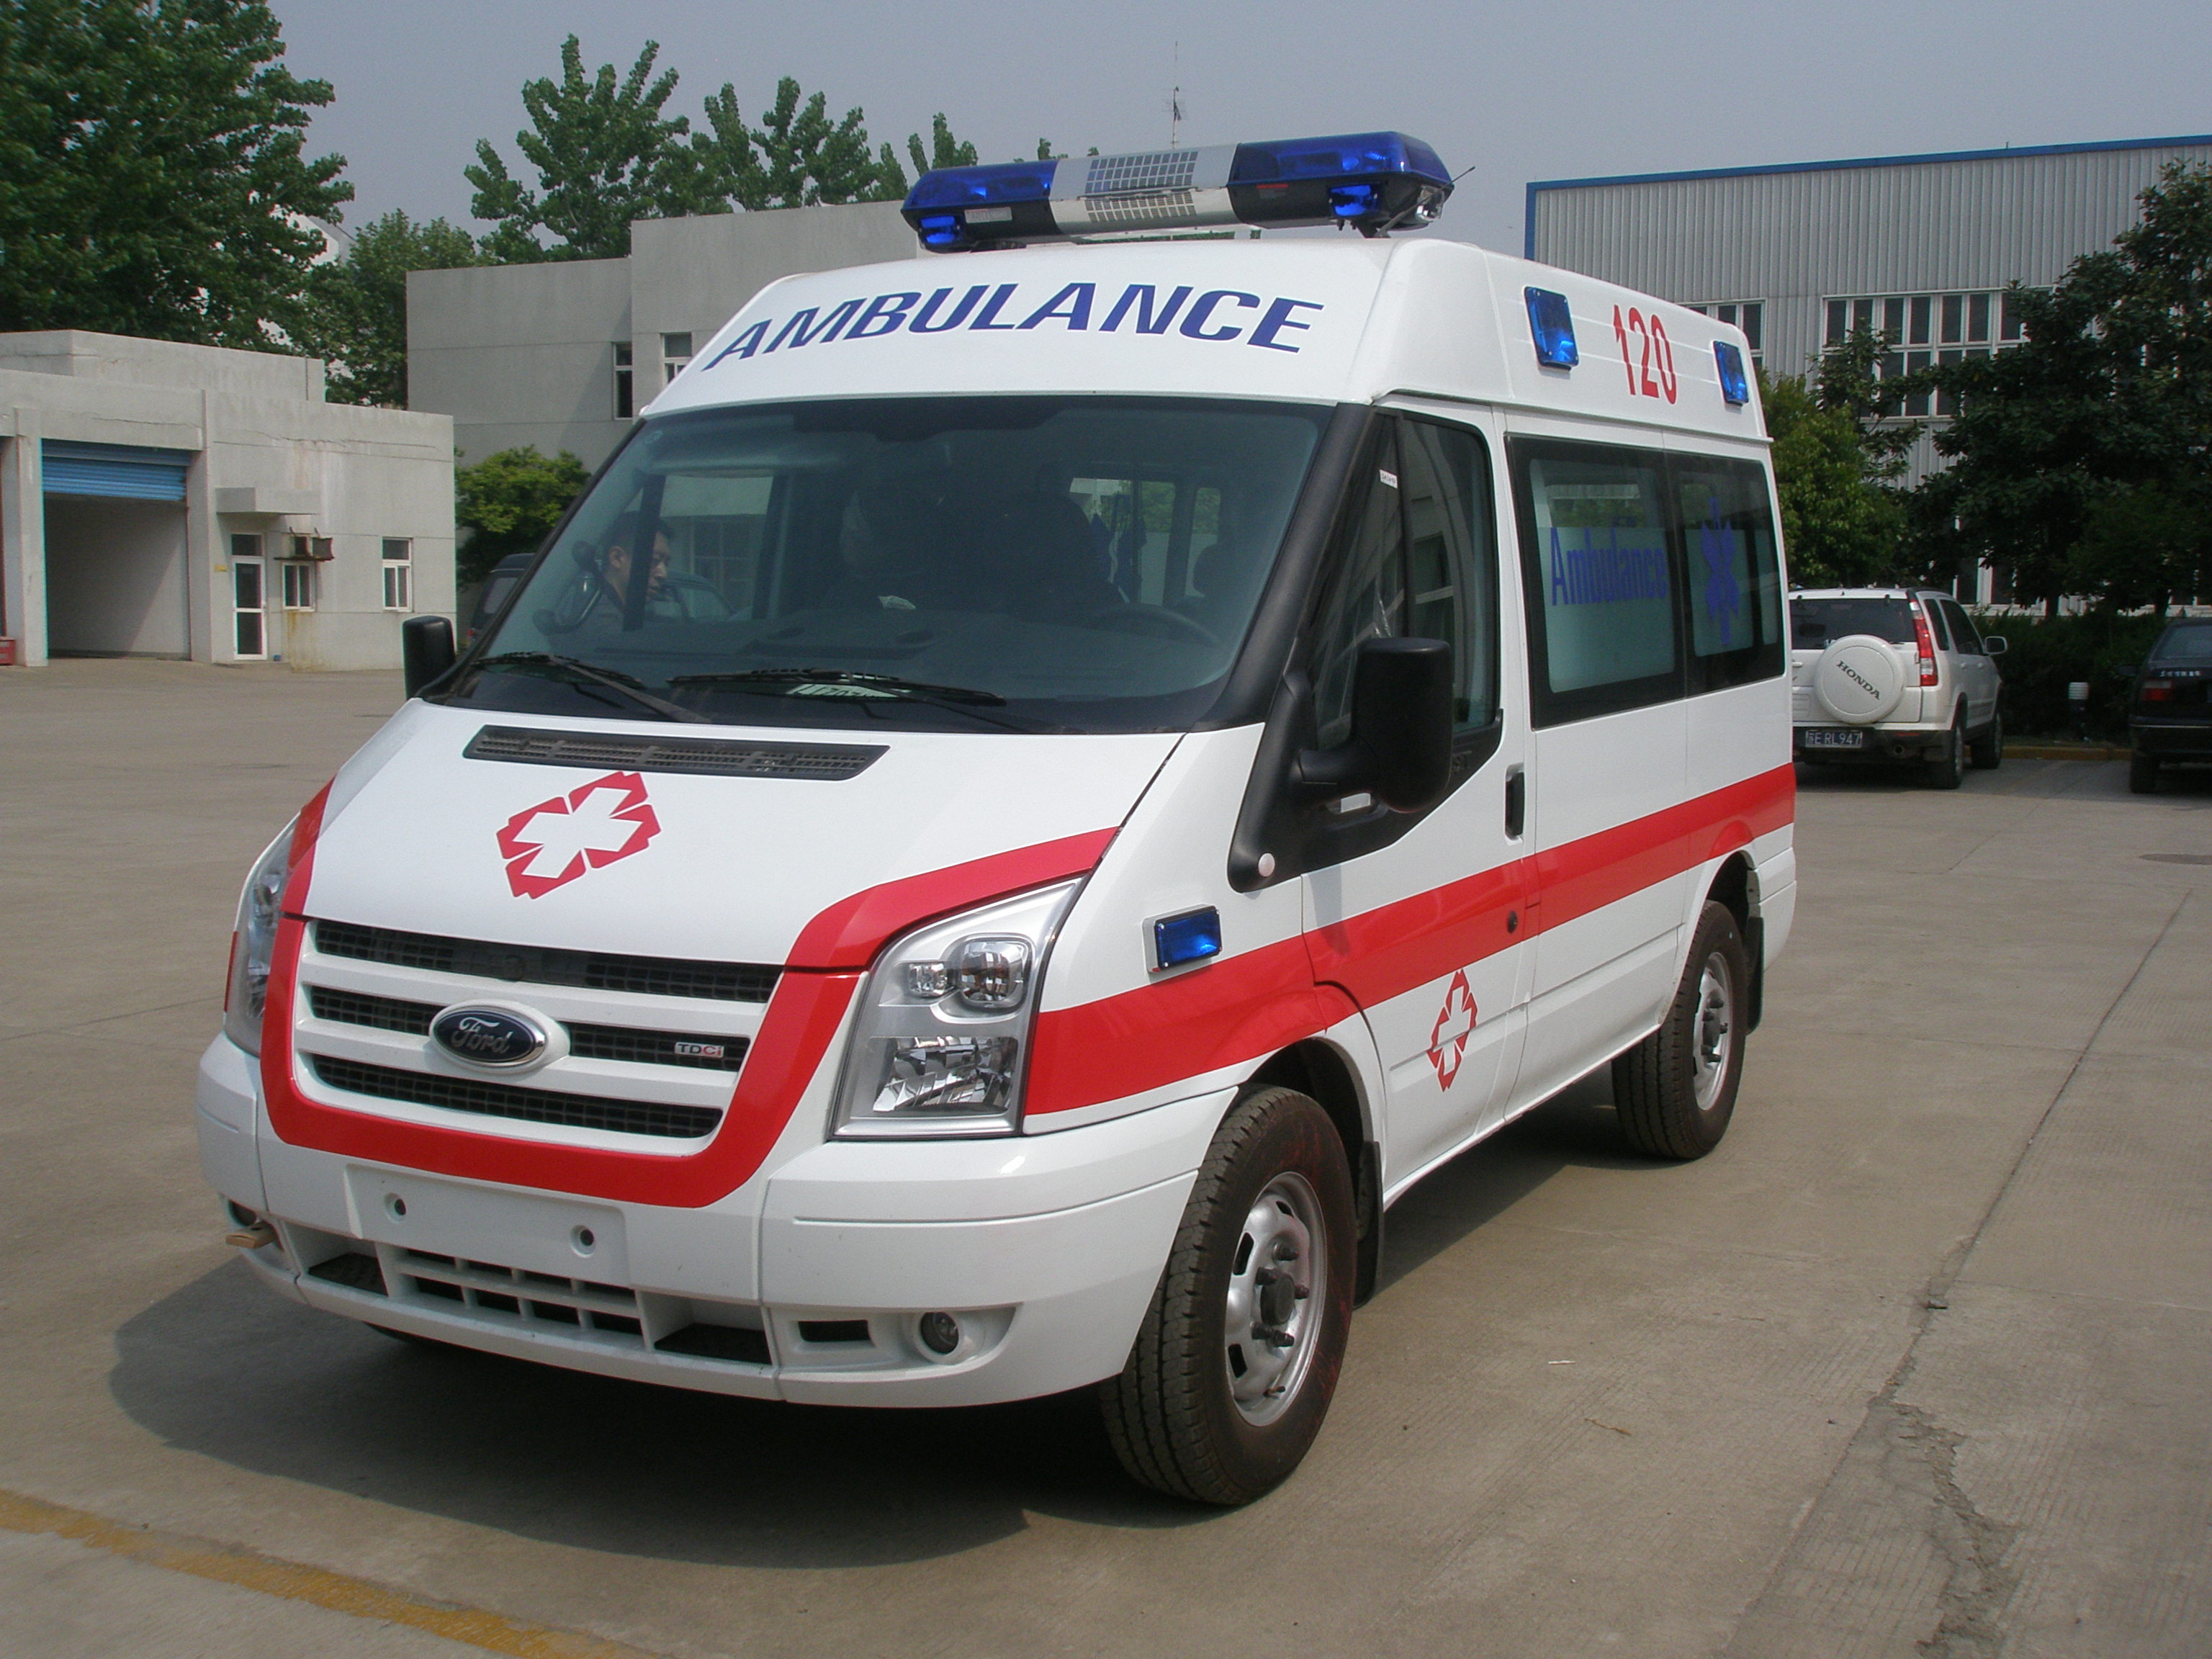 上海浦東120急救車病人轉院車公司醫幫扶轉運